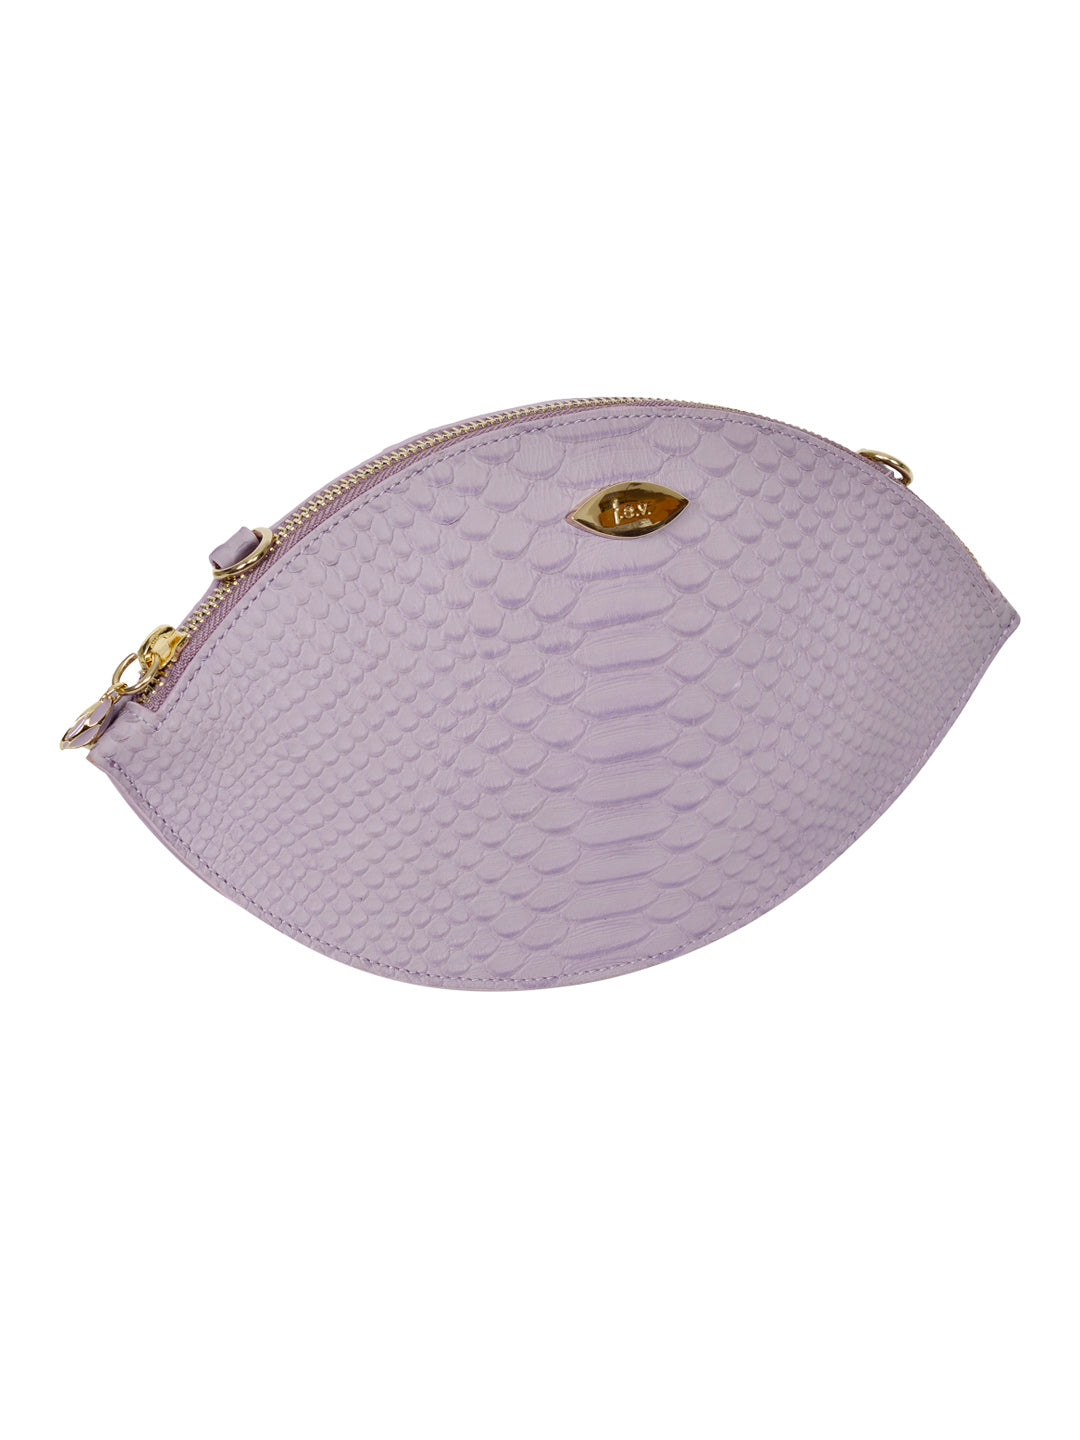 Francesca's Pearl Embellished Purse | Embellished purses, Purses,  Embellished